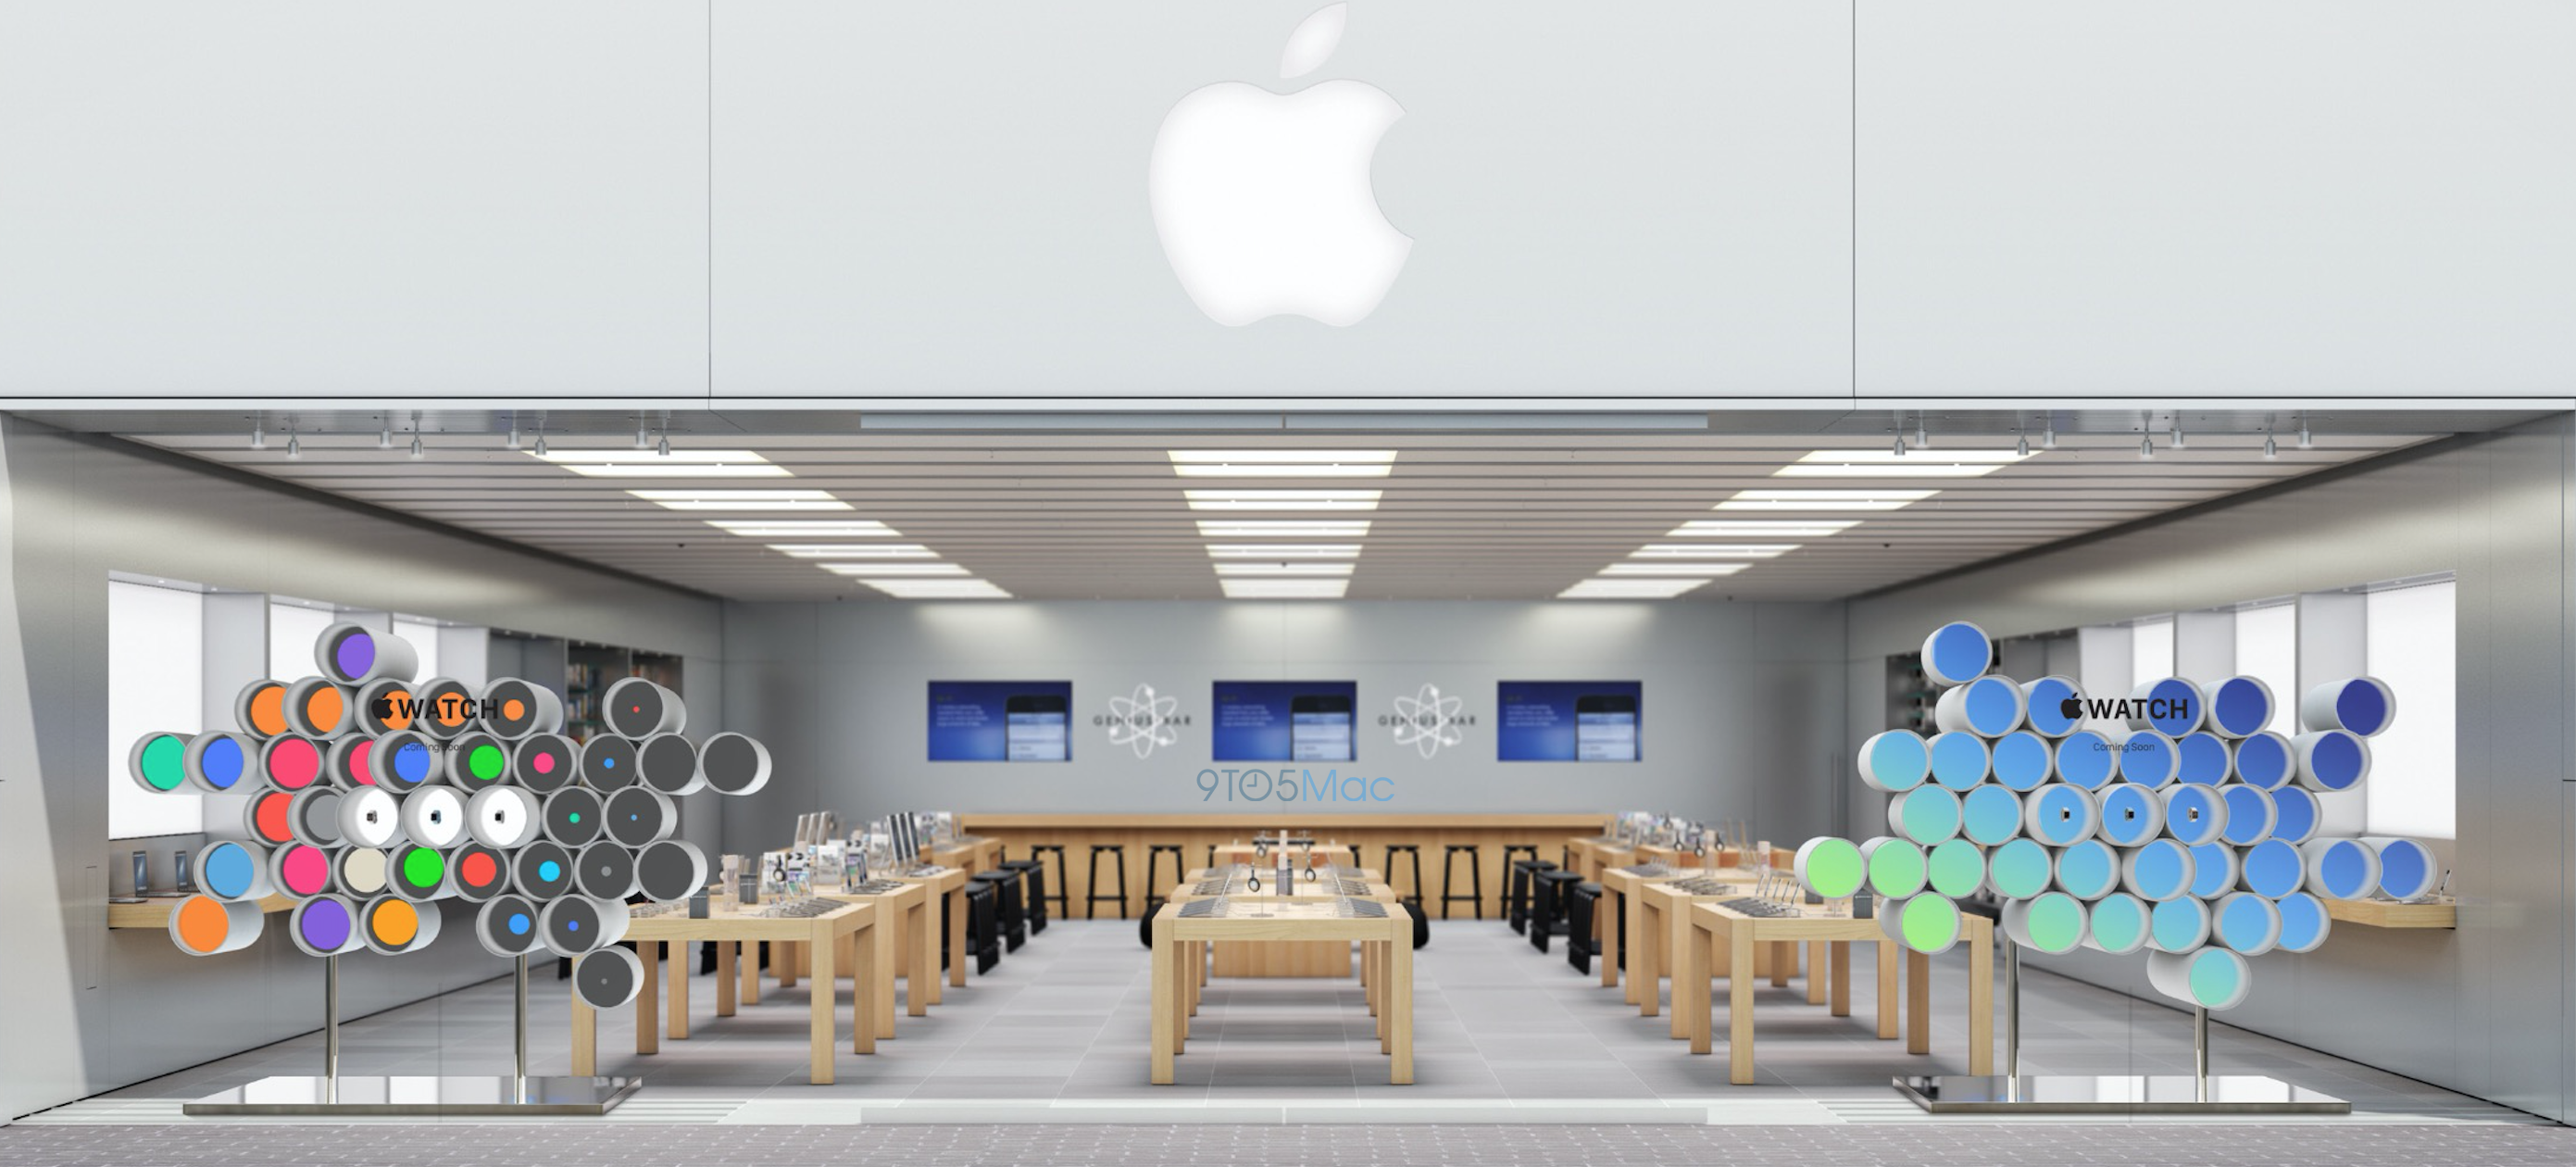 Apple Store Render